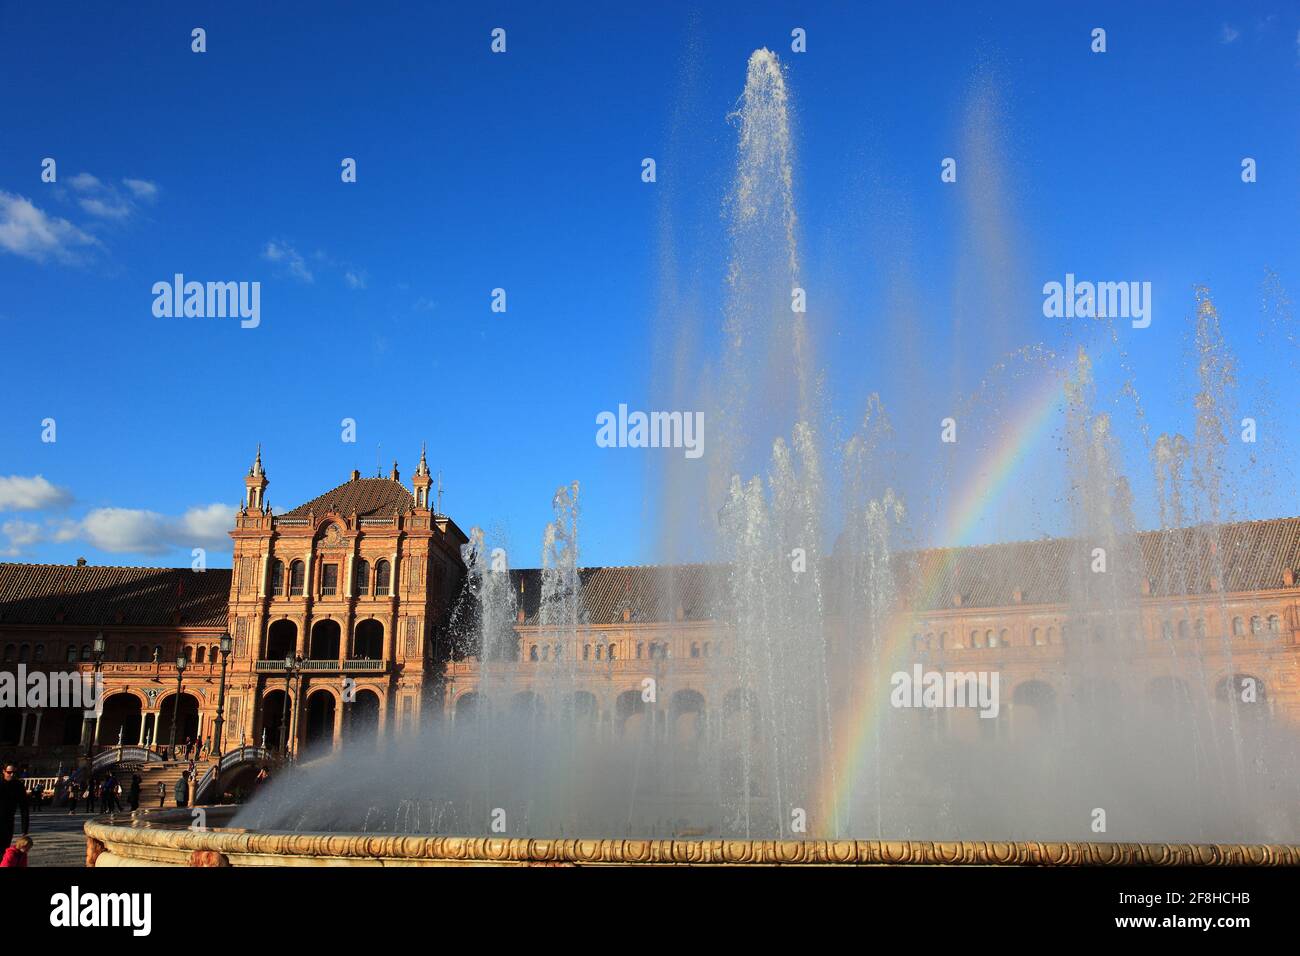 Plaza de Espana, Piazza Spagna, una piazza situata nel Parque de Mar?a Luisa, Parco Maria Luisa, a Siviglia, Spagna, Andalusia, con fontana Foto Stock